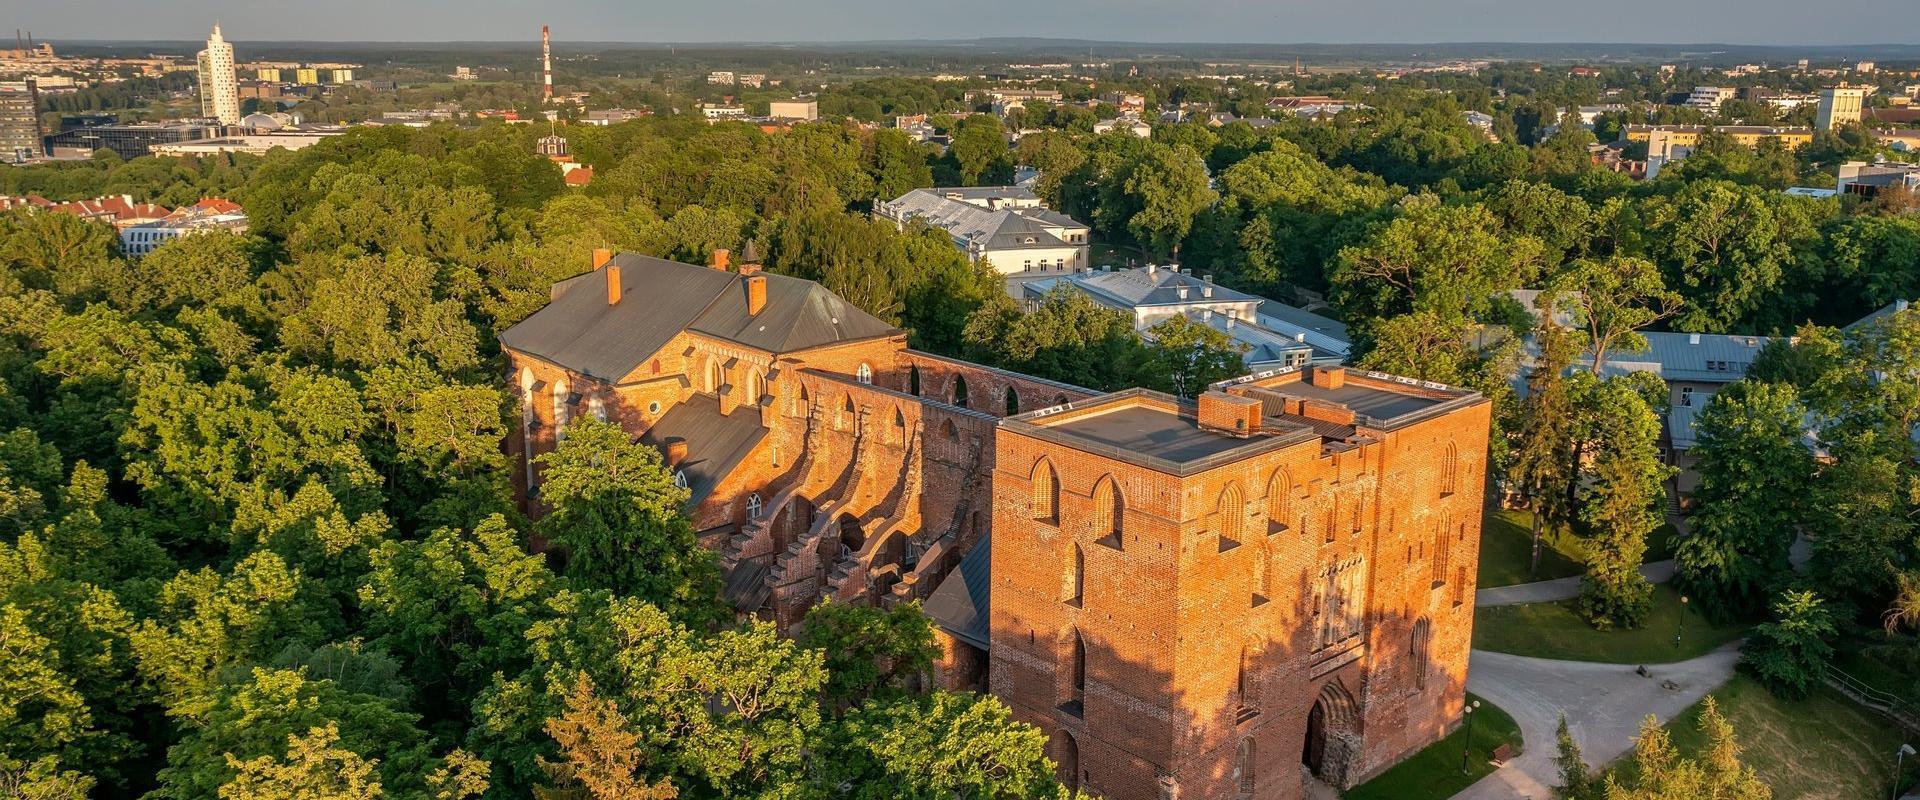 Die auf dem schönen Domberg befindliche Domkirche zu Tartu (dt. Dorpat) ist eine der größten mittelalterlichen Kirchen Estlands und die einzige mit zw